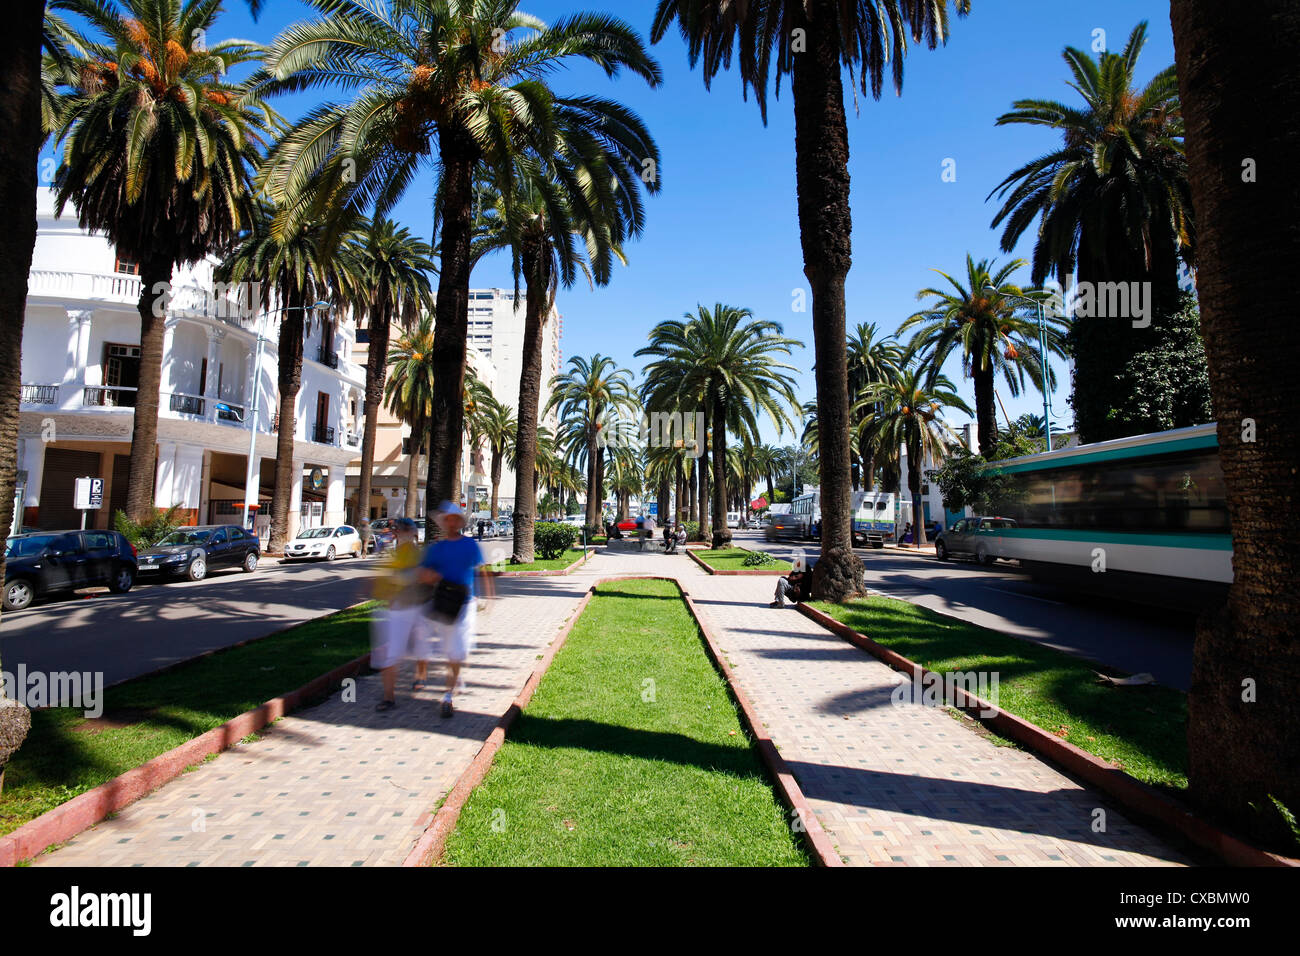 Le Boulevard de Rachidi, une large rue bordée d'arbres typiques dans le quartier smart Lusitania, Casablanca, Maroc, Afrique du Nord Banque D'Images